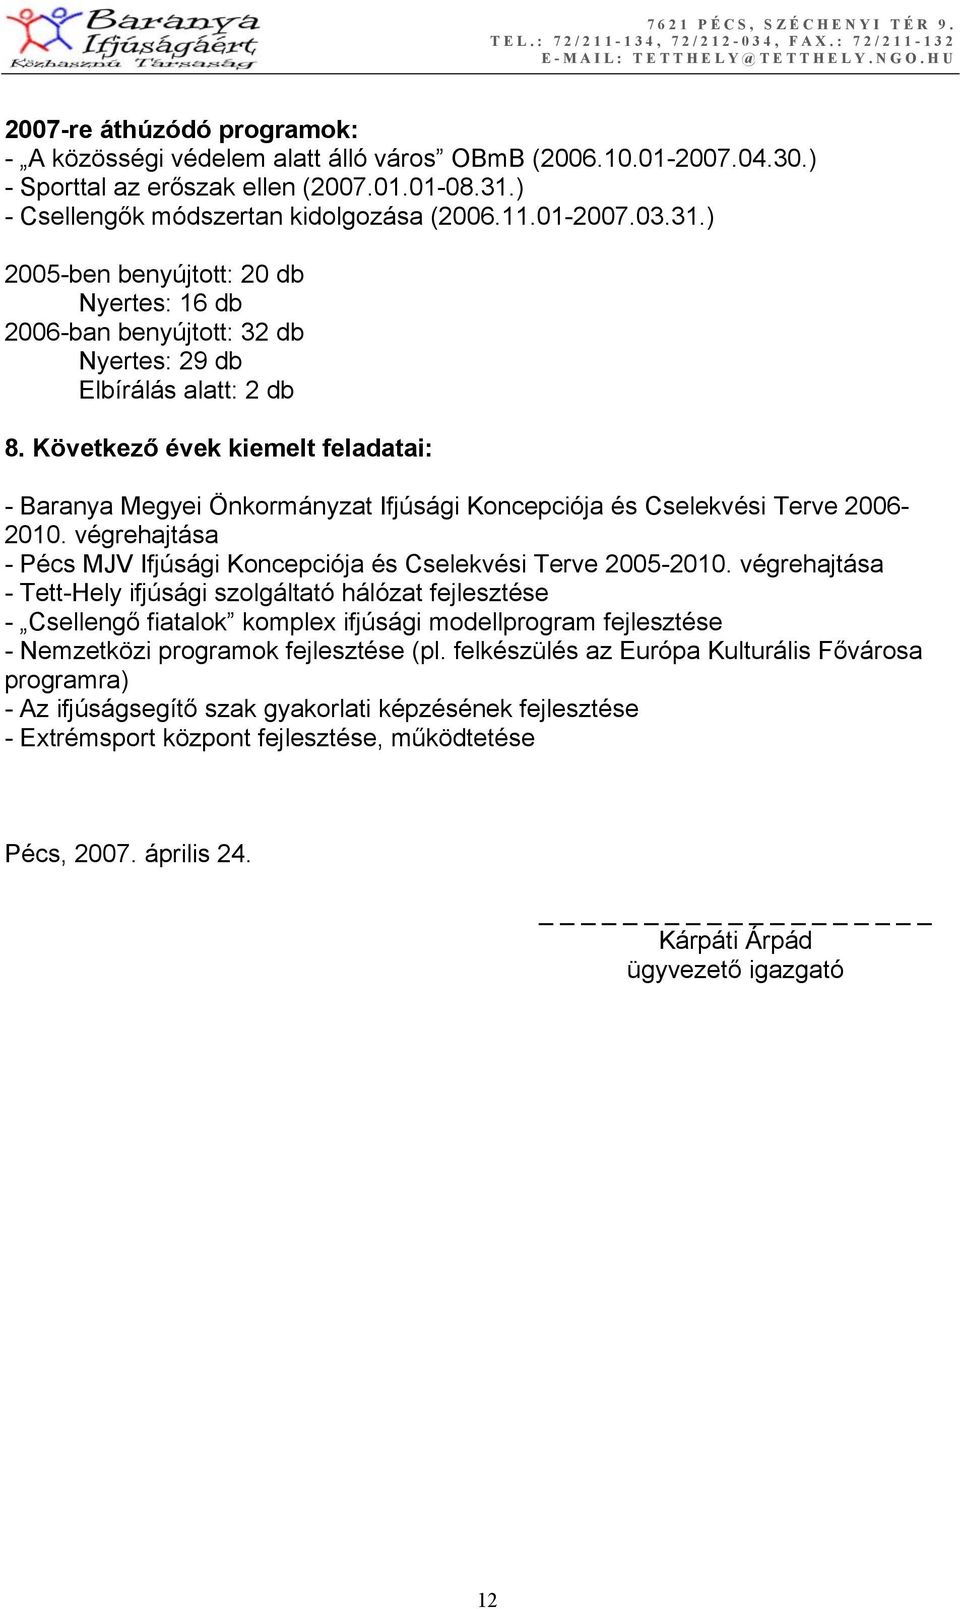 Következő évek kiemelt feladatai: - Baranya Megyei Önkormányzat Ifjúsági Koncepciója és Cselekvési Terve 2006-2010. végrehajtása - Pécs MJV Ifjúsági Koncepciója és Cselekvési Terve 2005-2010.